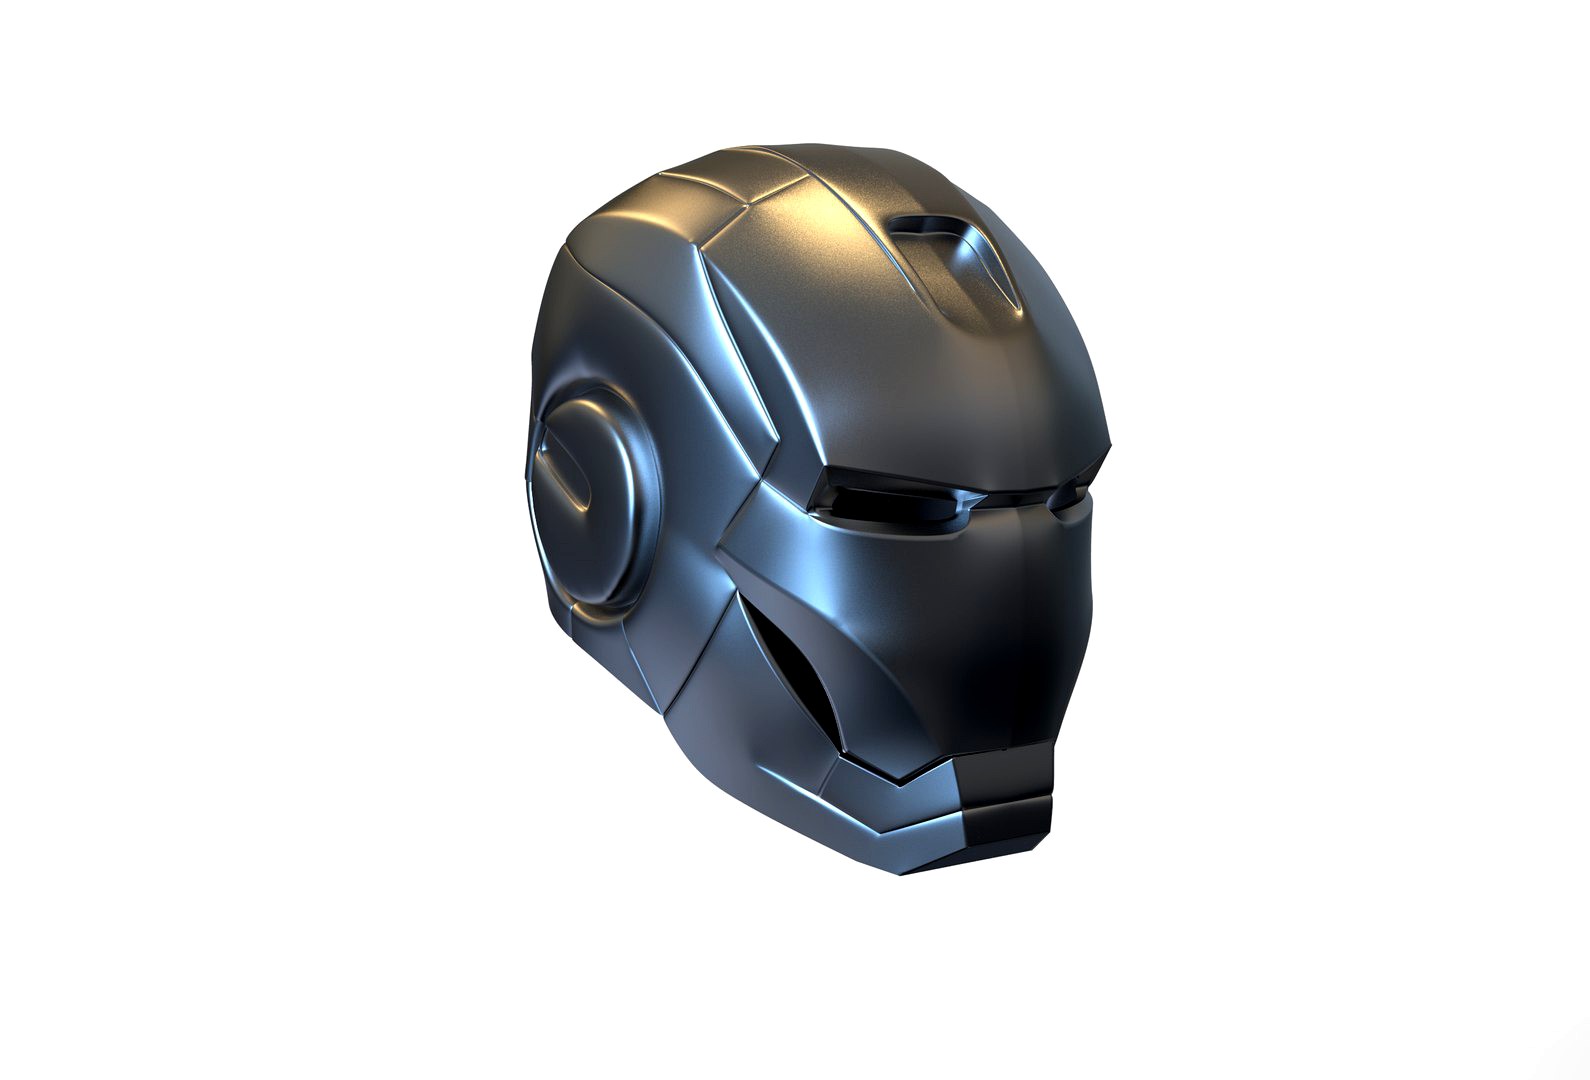 MK2 helmet